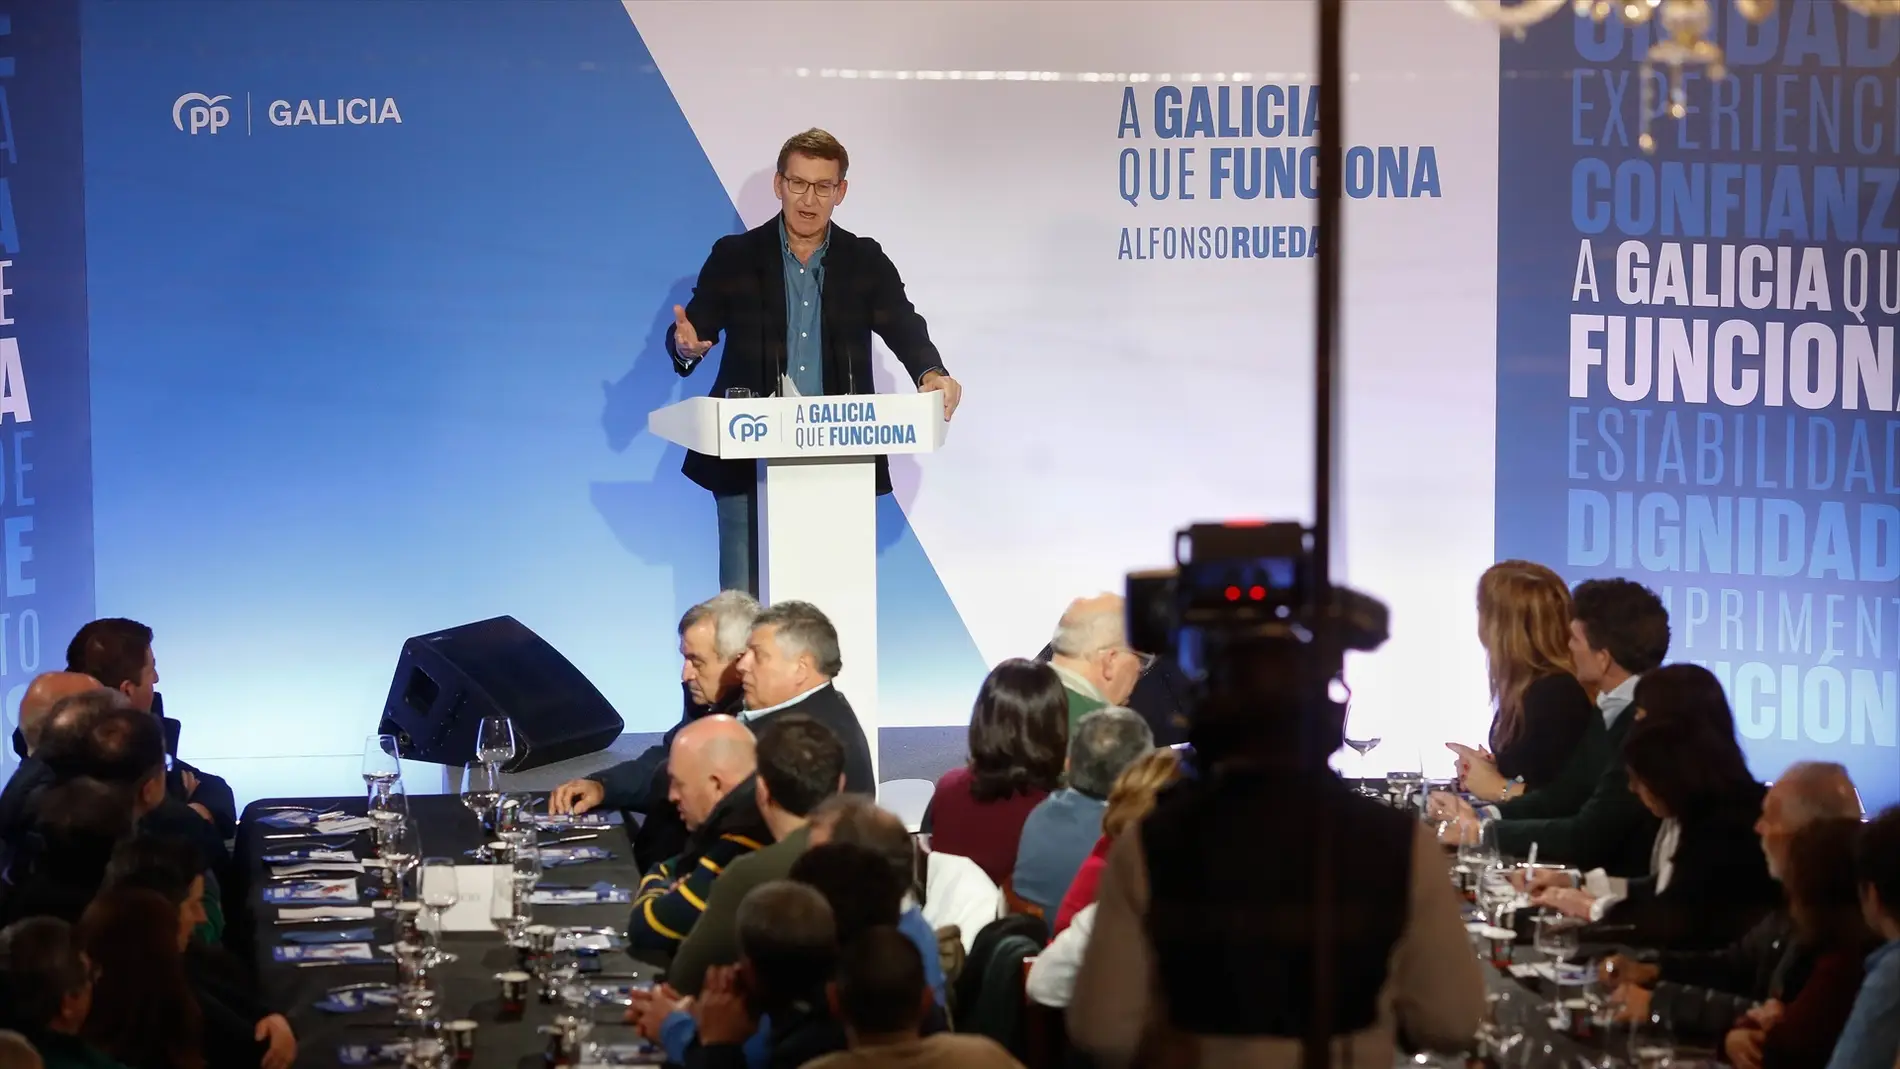 El PP dice que no se dan las condiciones para indultar a Puigdemont y que rechazó la amnistía "en menos de 24 horas"